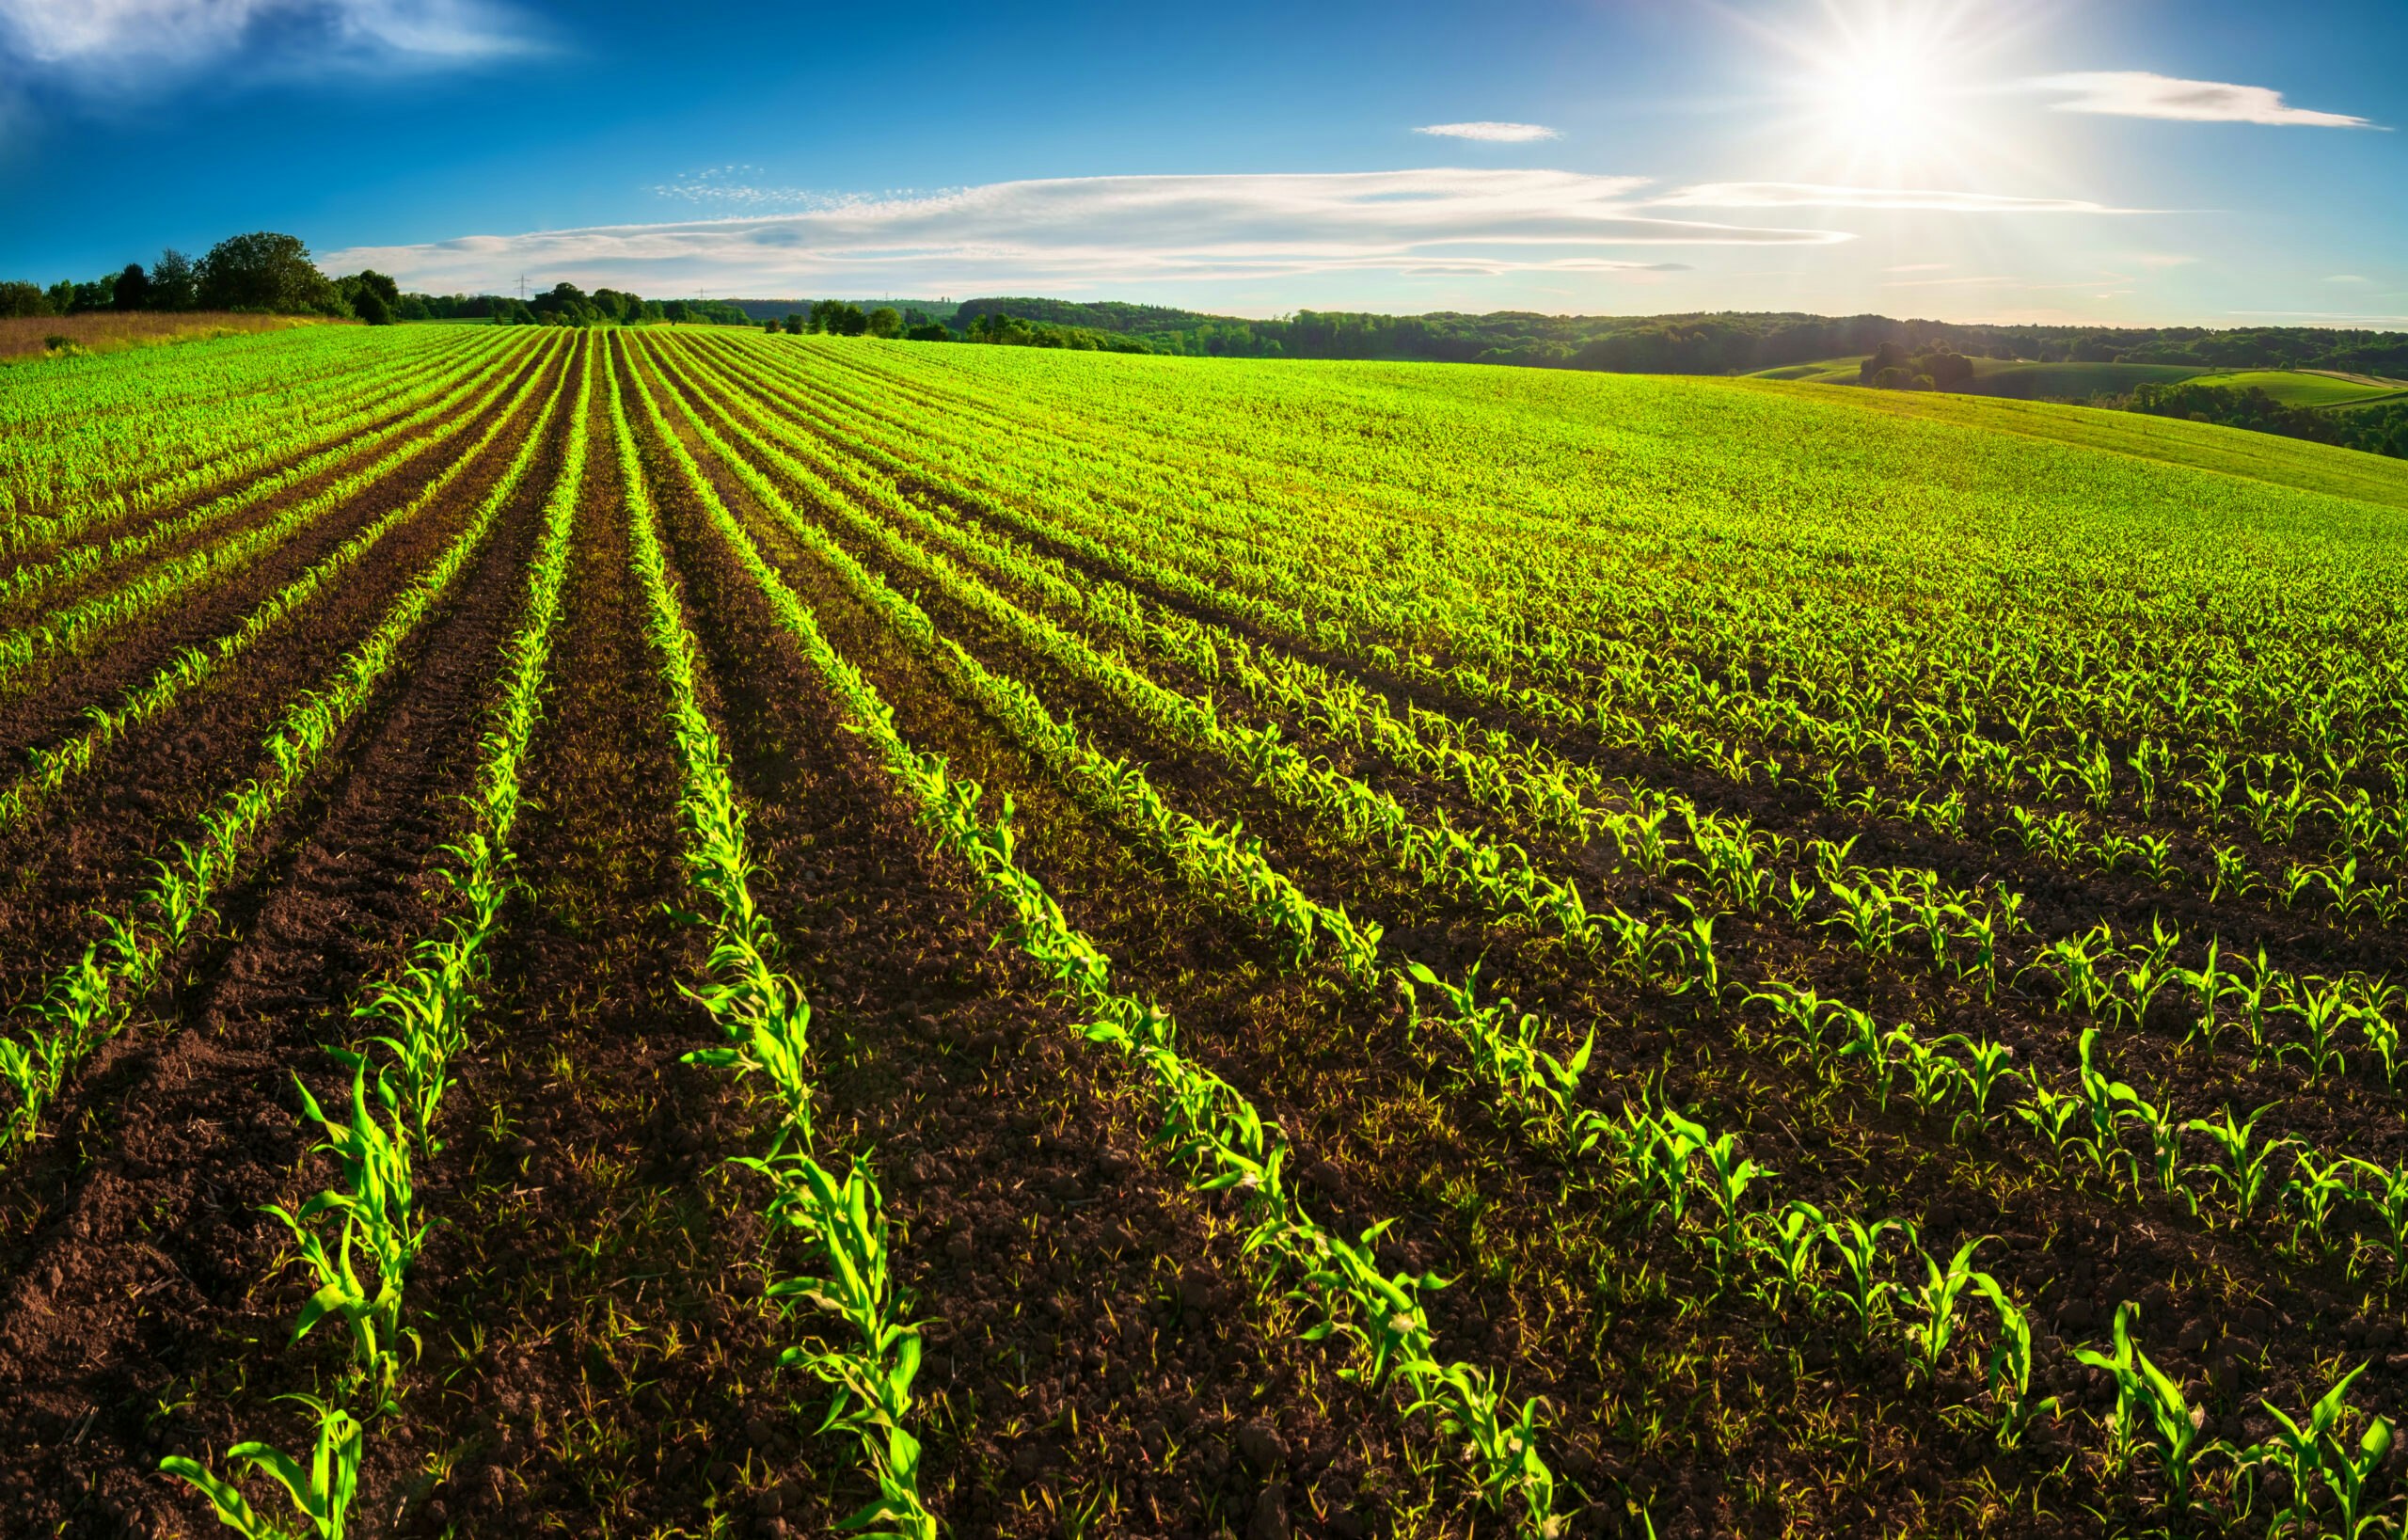 消費者は気候変動を抑制するために農業とエネルギーを重要視している。